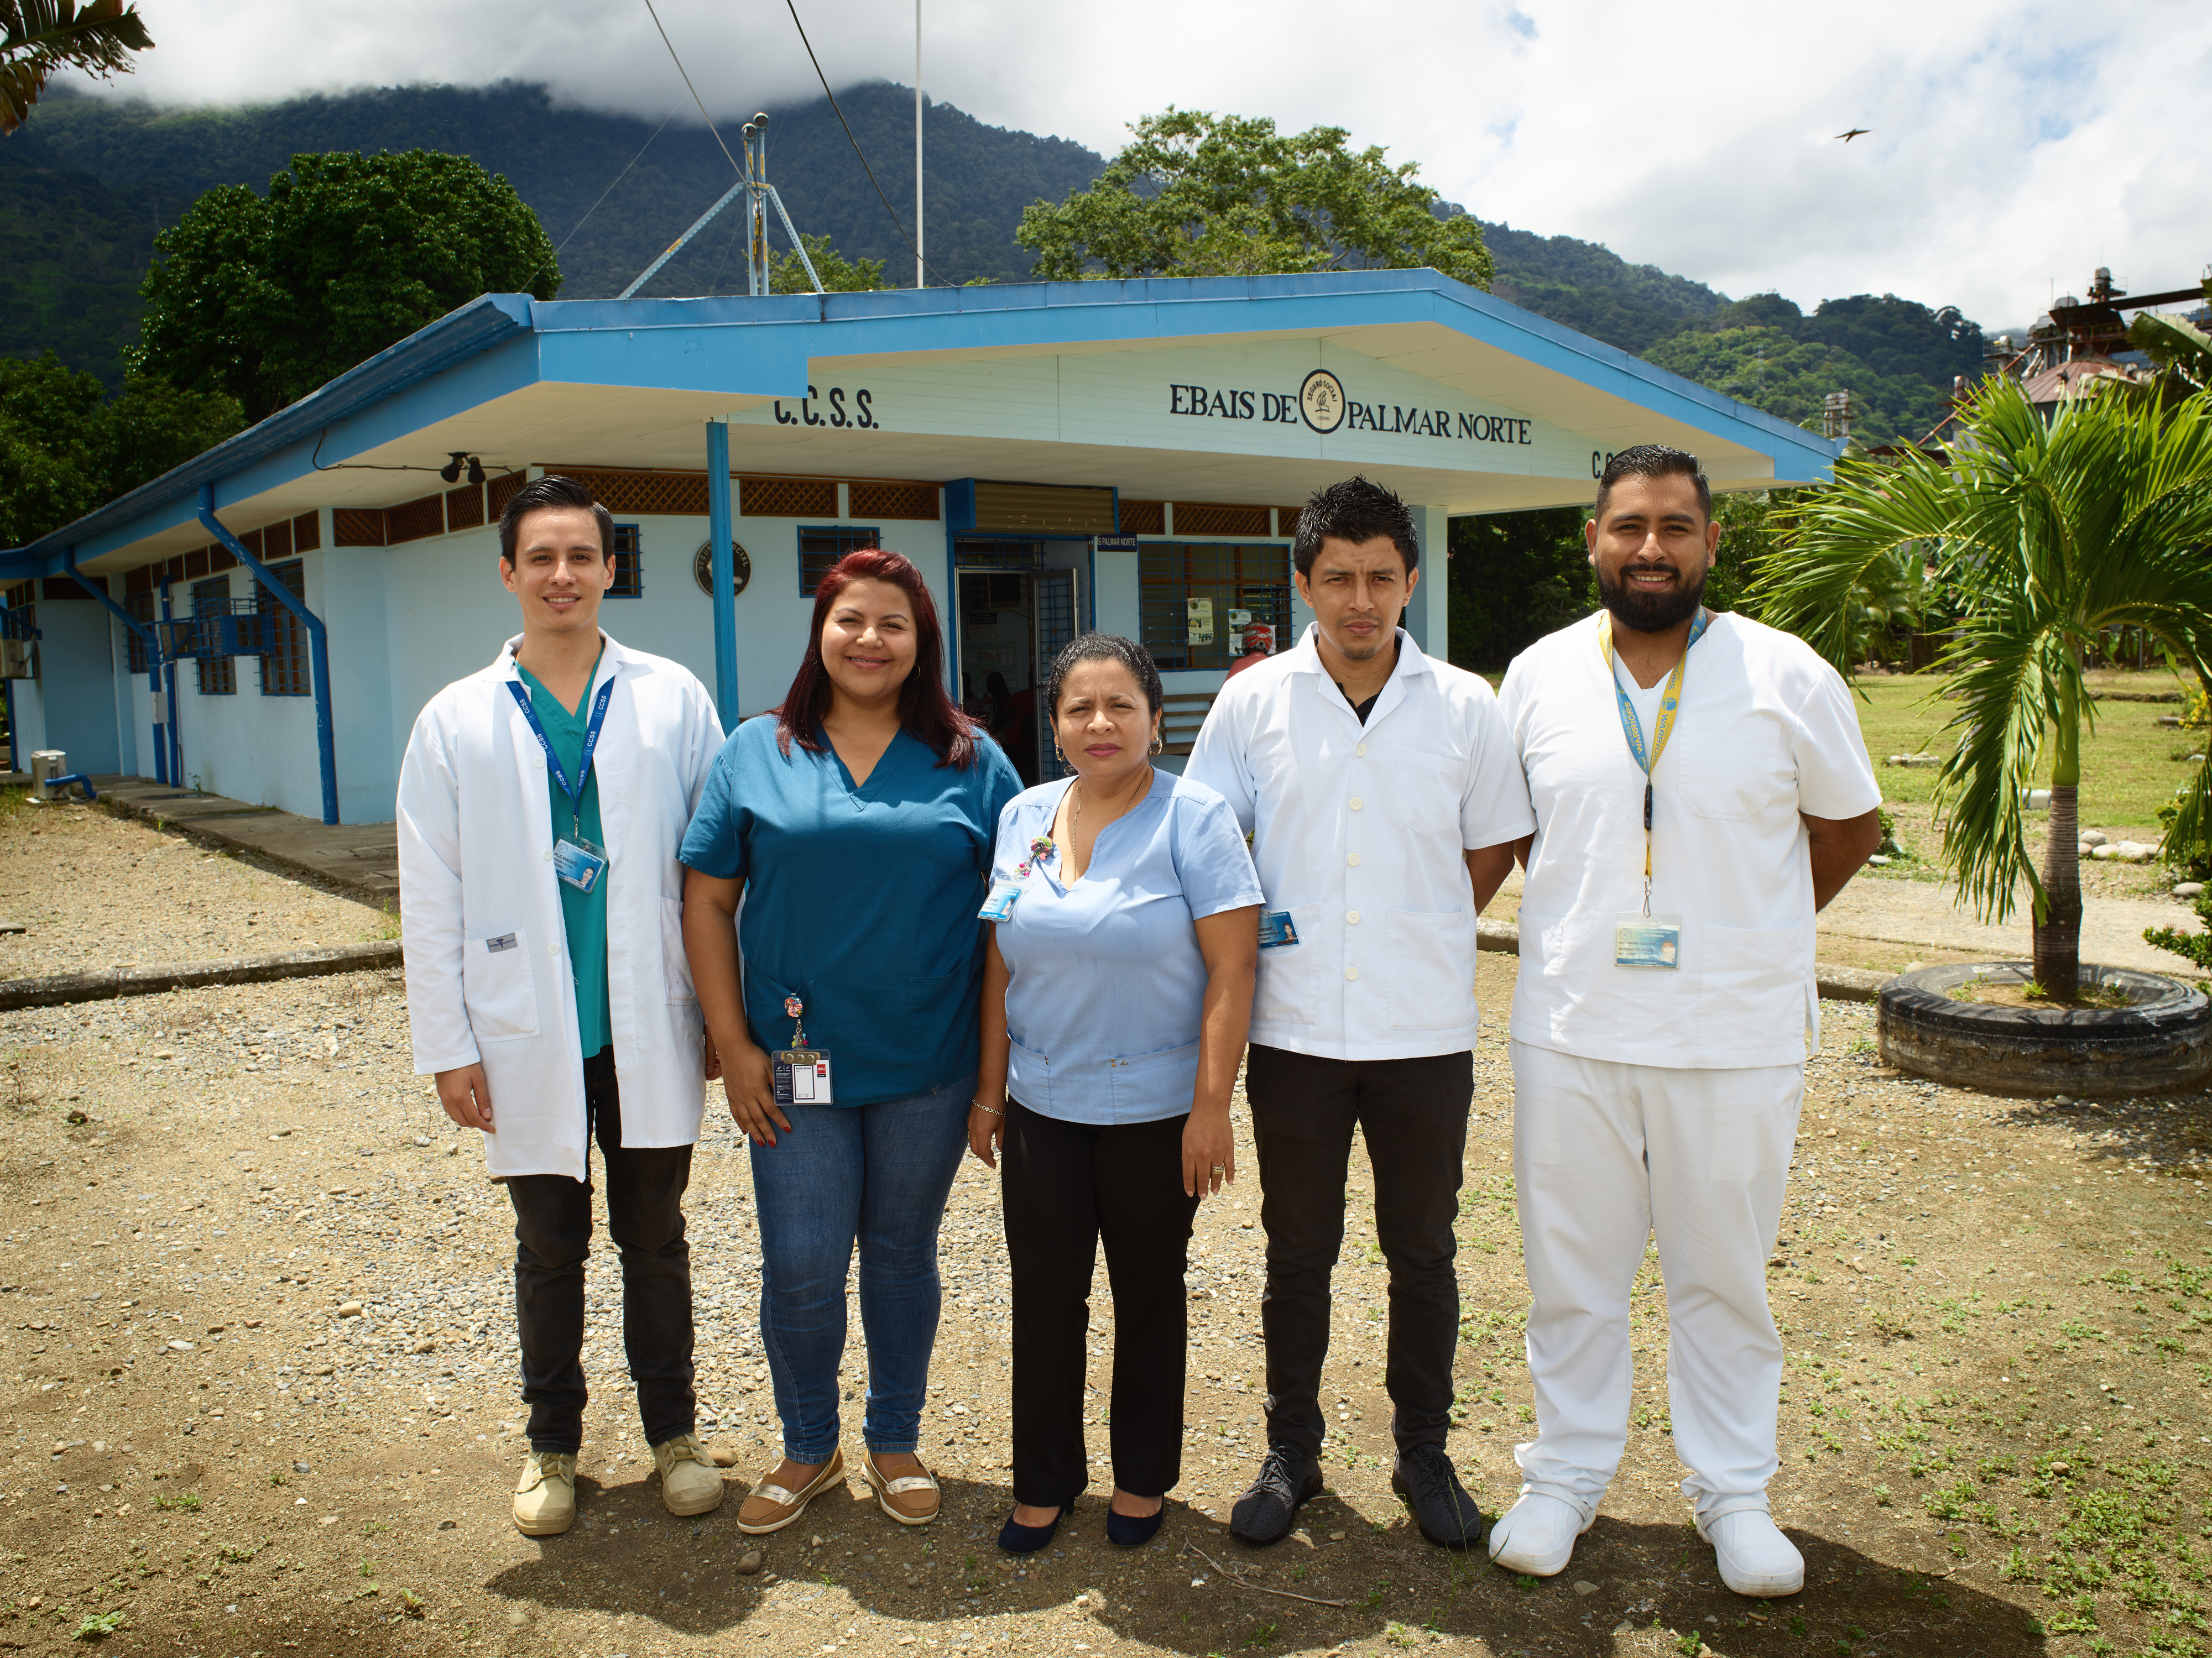 The EBAIS de Palmar Norte care team outside their clinic.